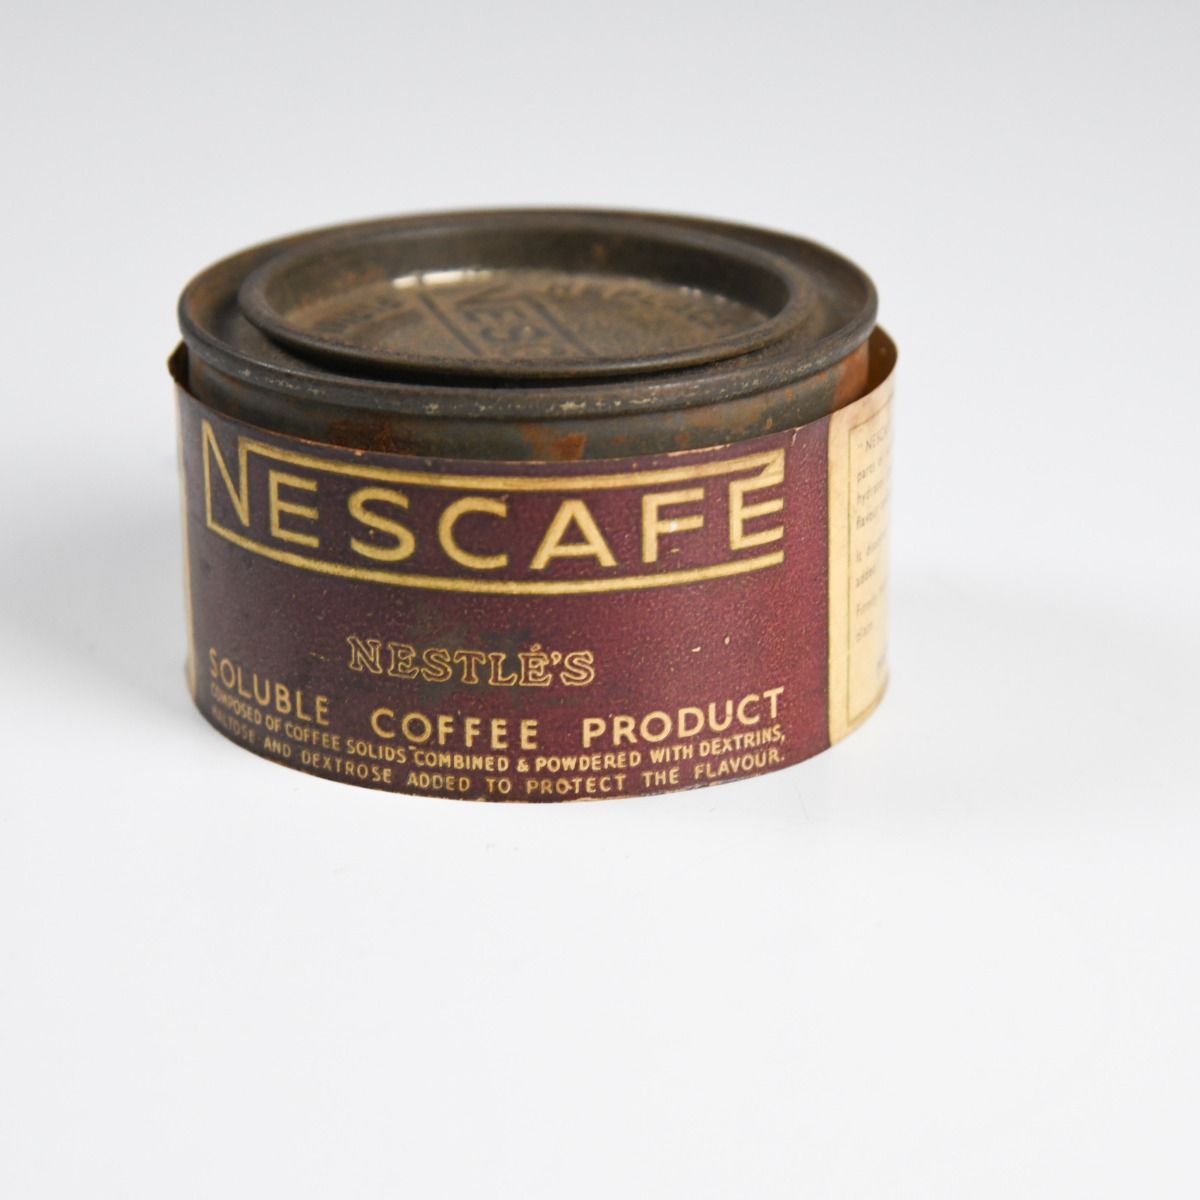 Vintage Nescafe Coffee Tin